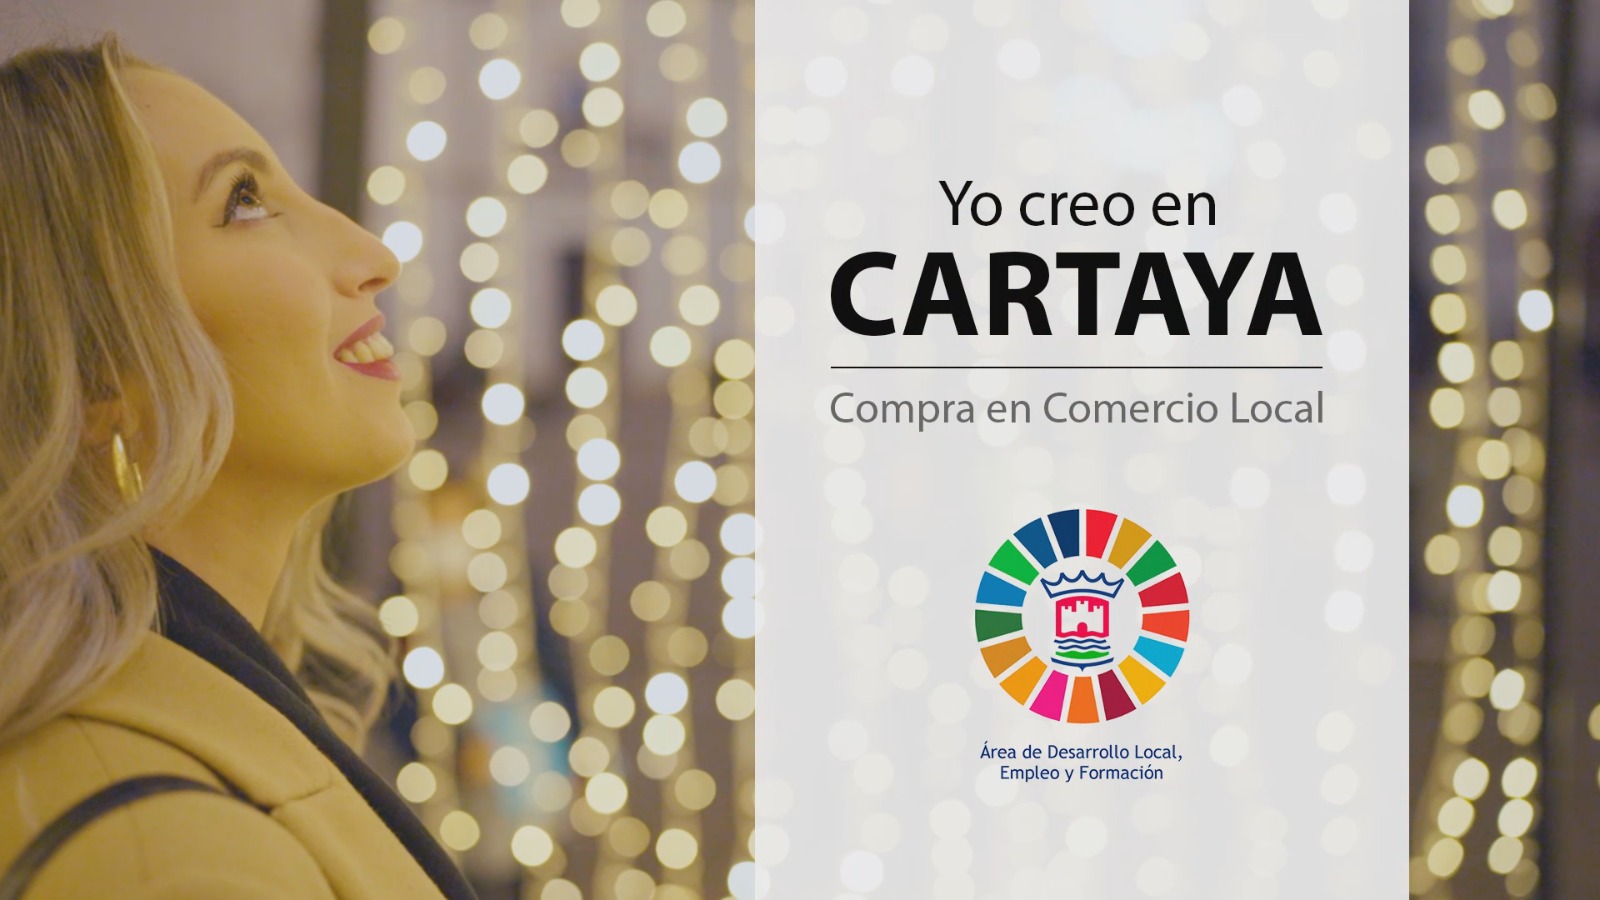 Campaña del Ayuntamiento de Cartaya para promocionar el comercio local en Navidad